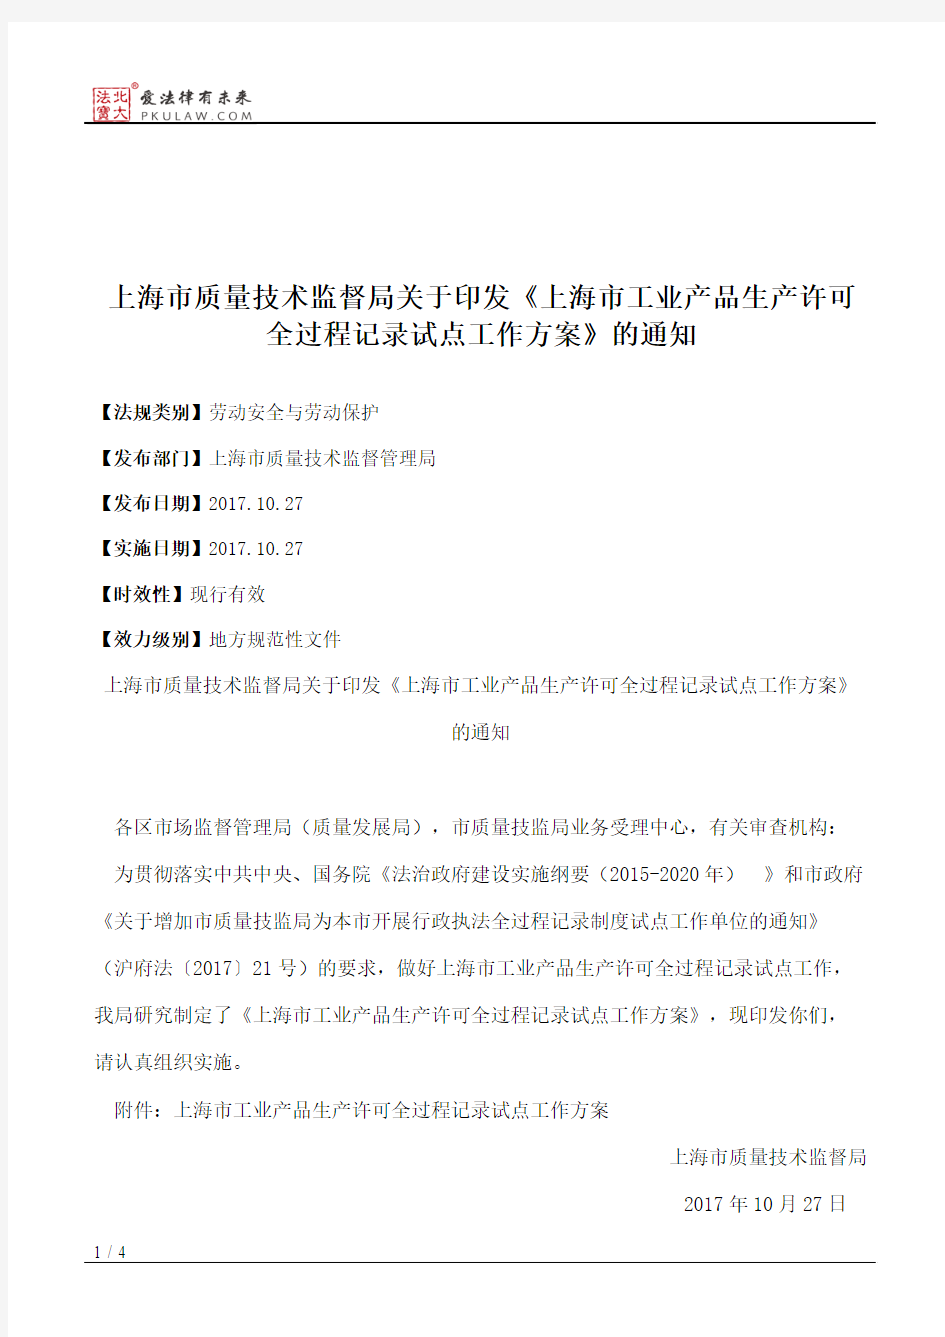 上海市质量技术监督局关于印发《上海市工业产品生产许可全过程记